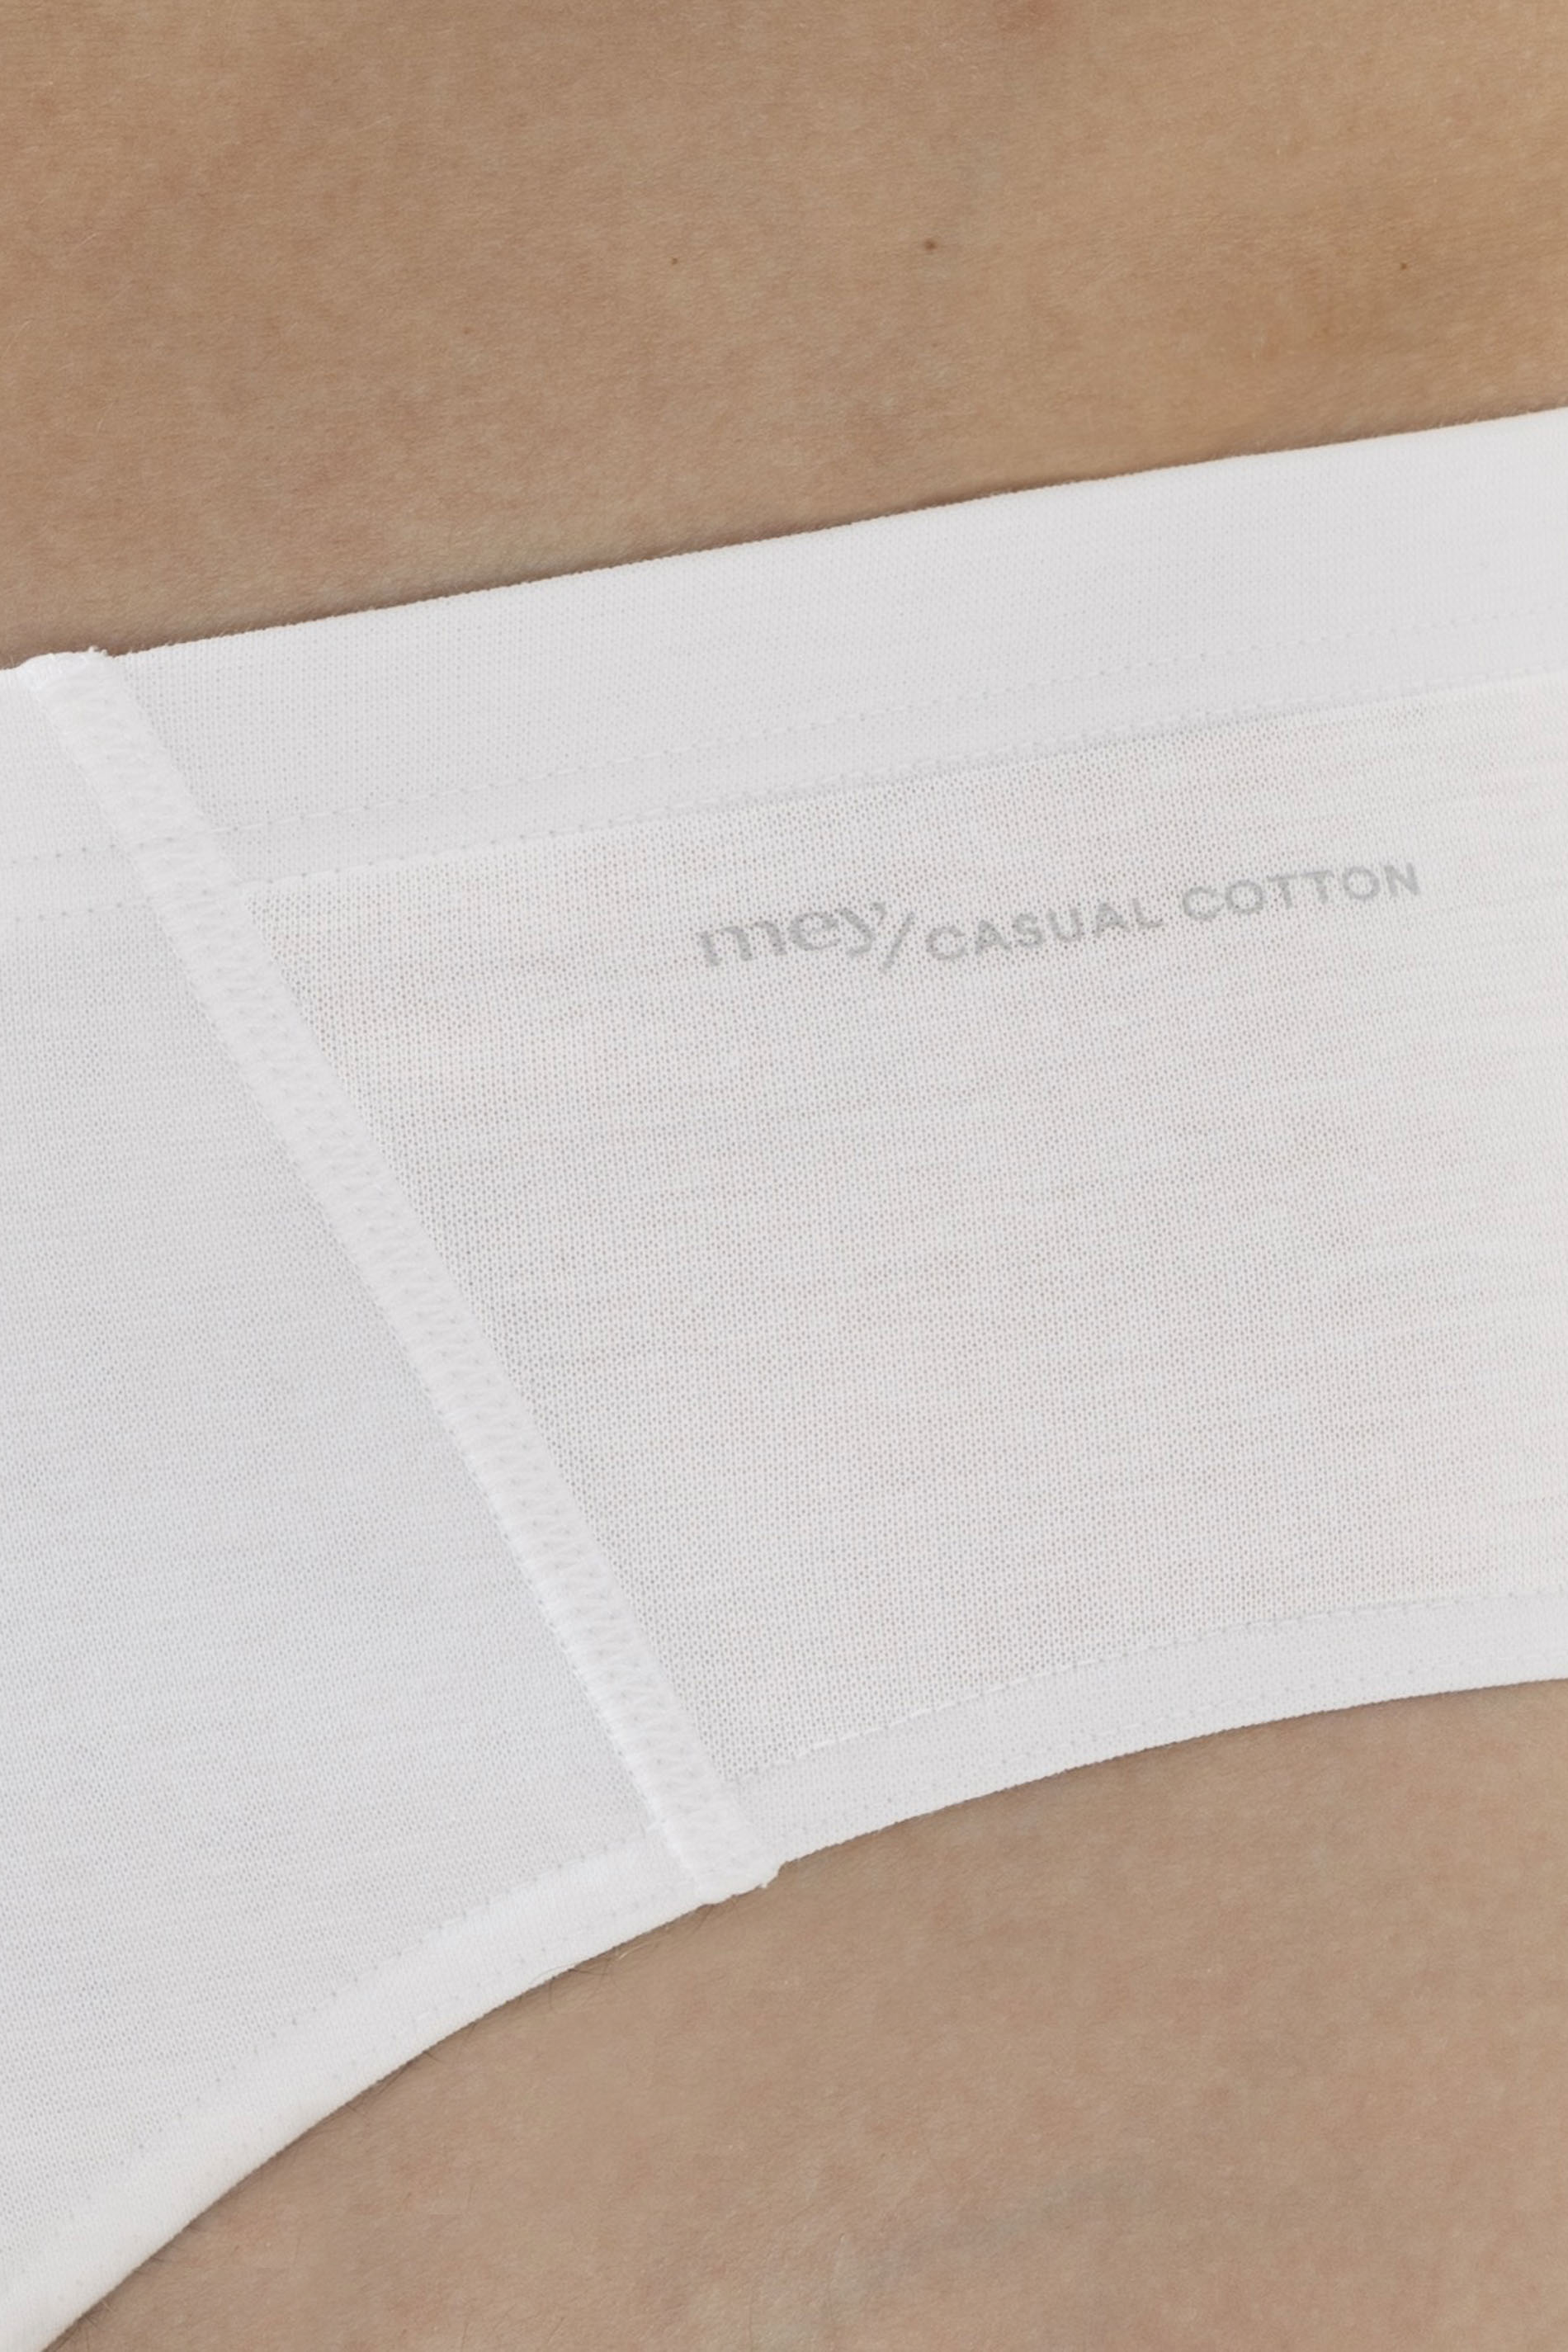 Slip Weiss Serie Casual Cotton Detailansicht 01 | mey®